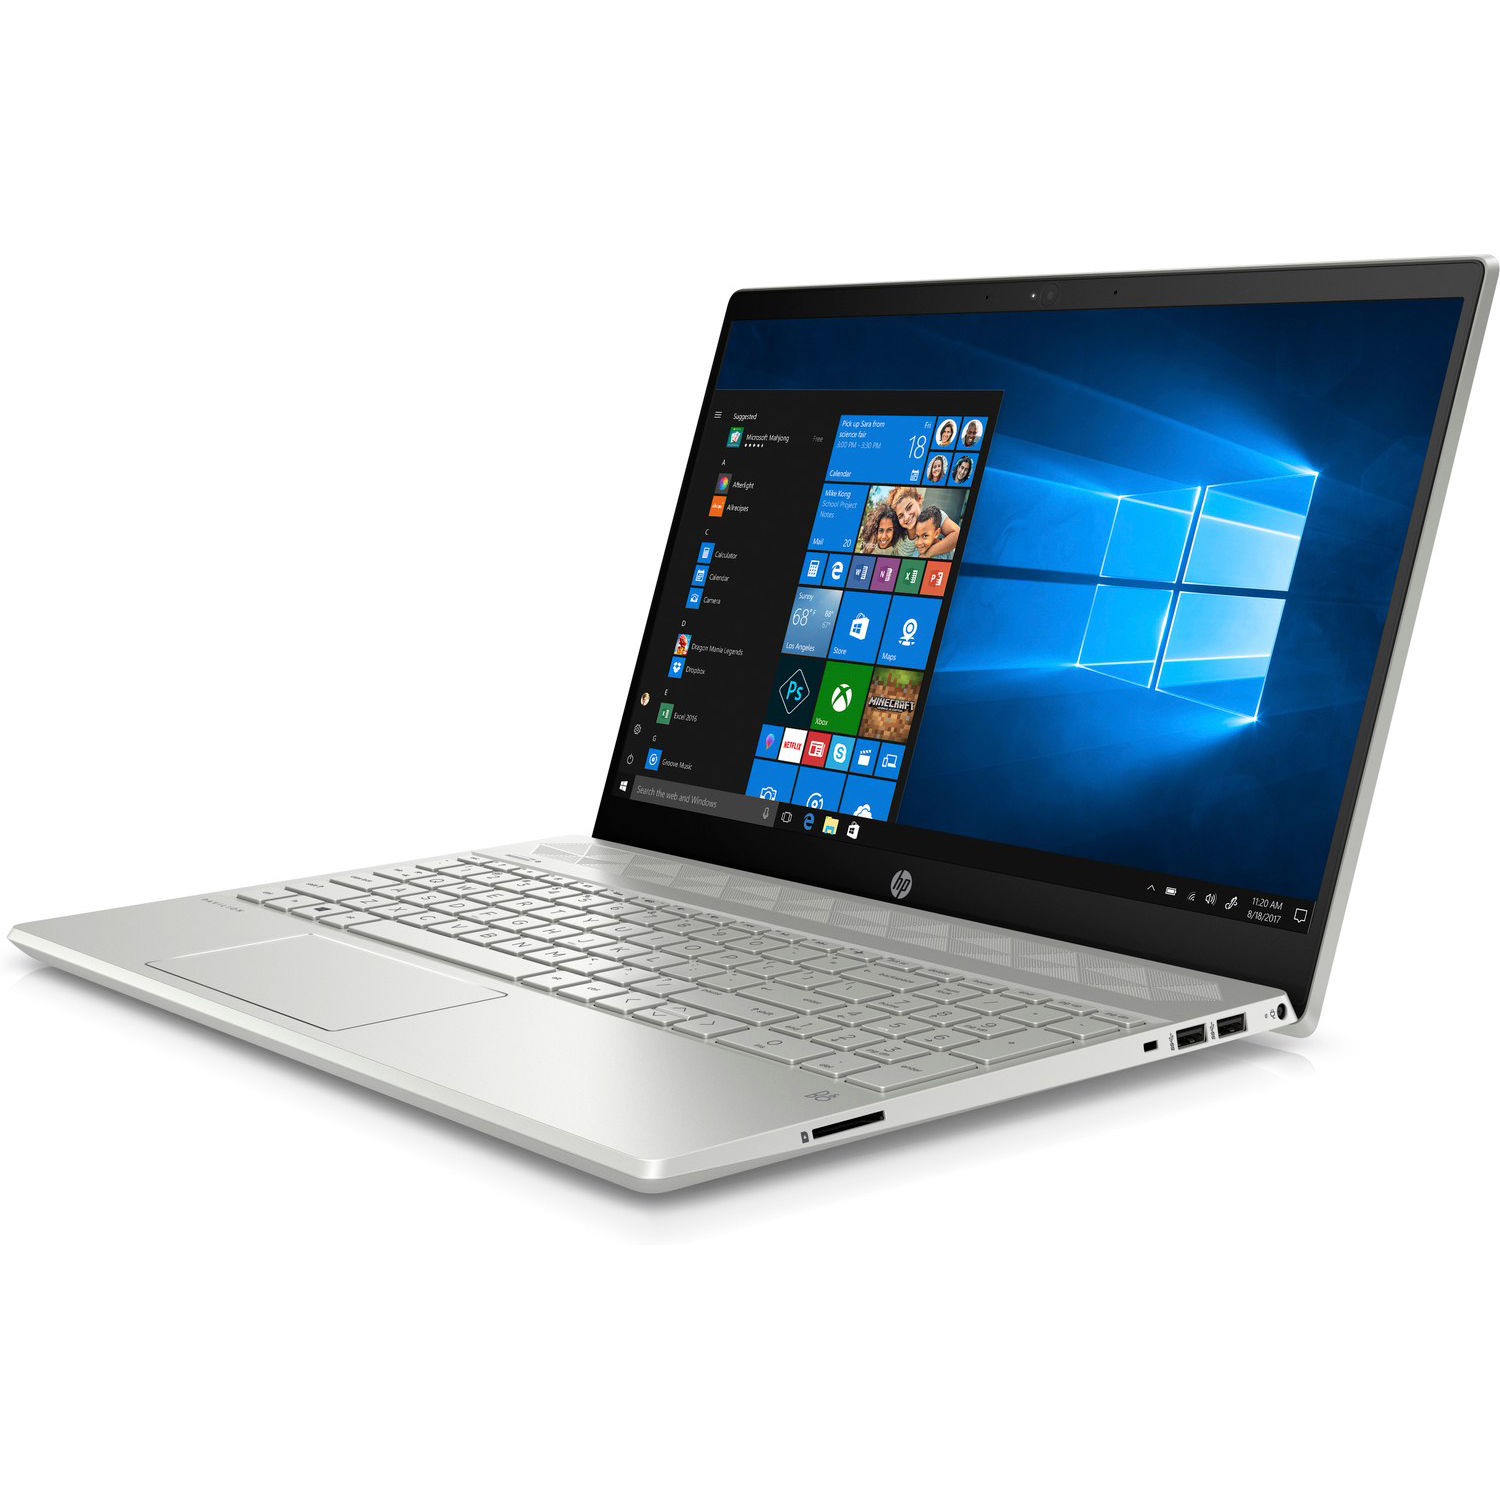 HP Pavilion 15 (Core i5-8250U, NVIDIA MX130) Laptop Review